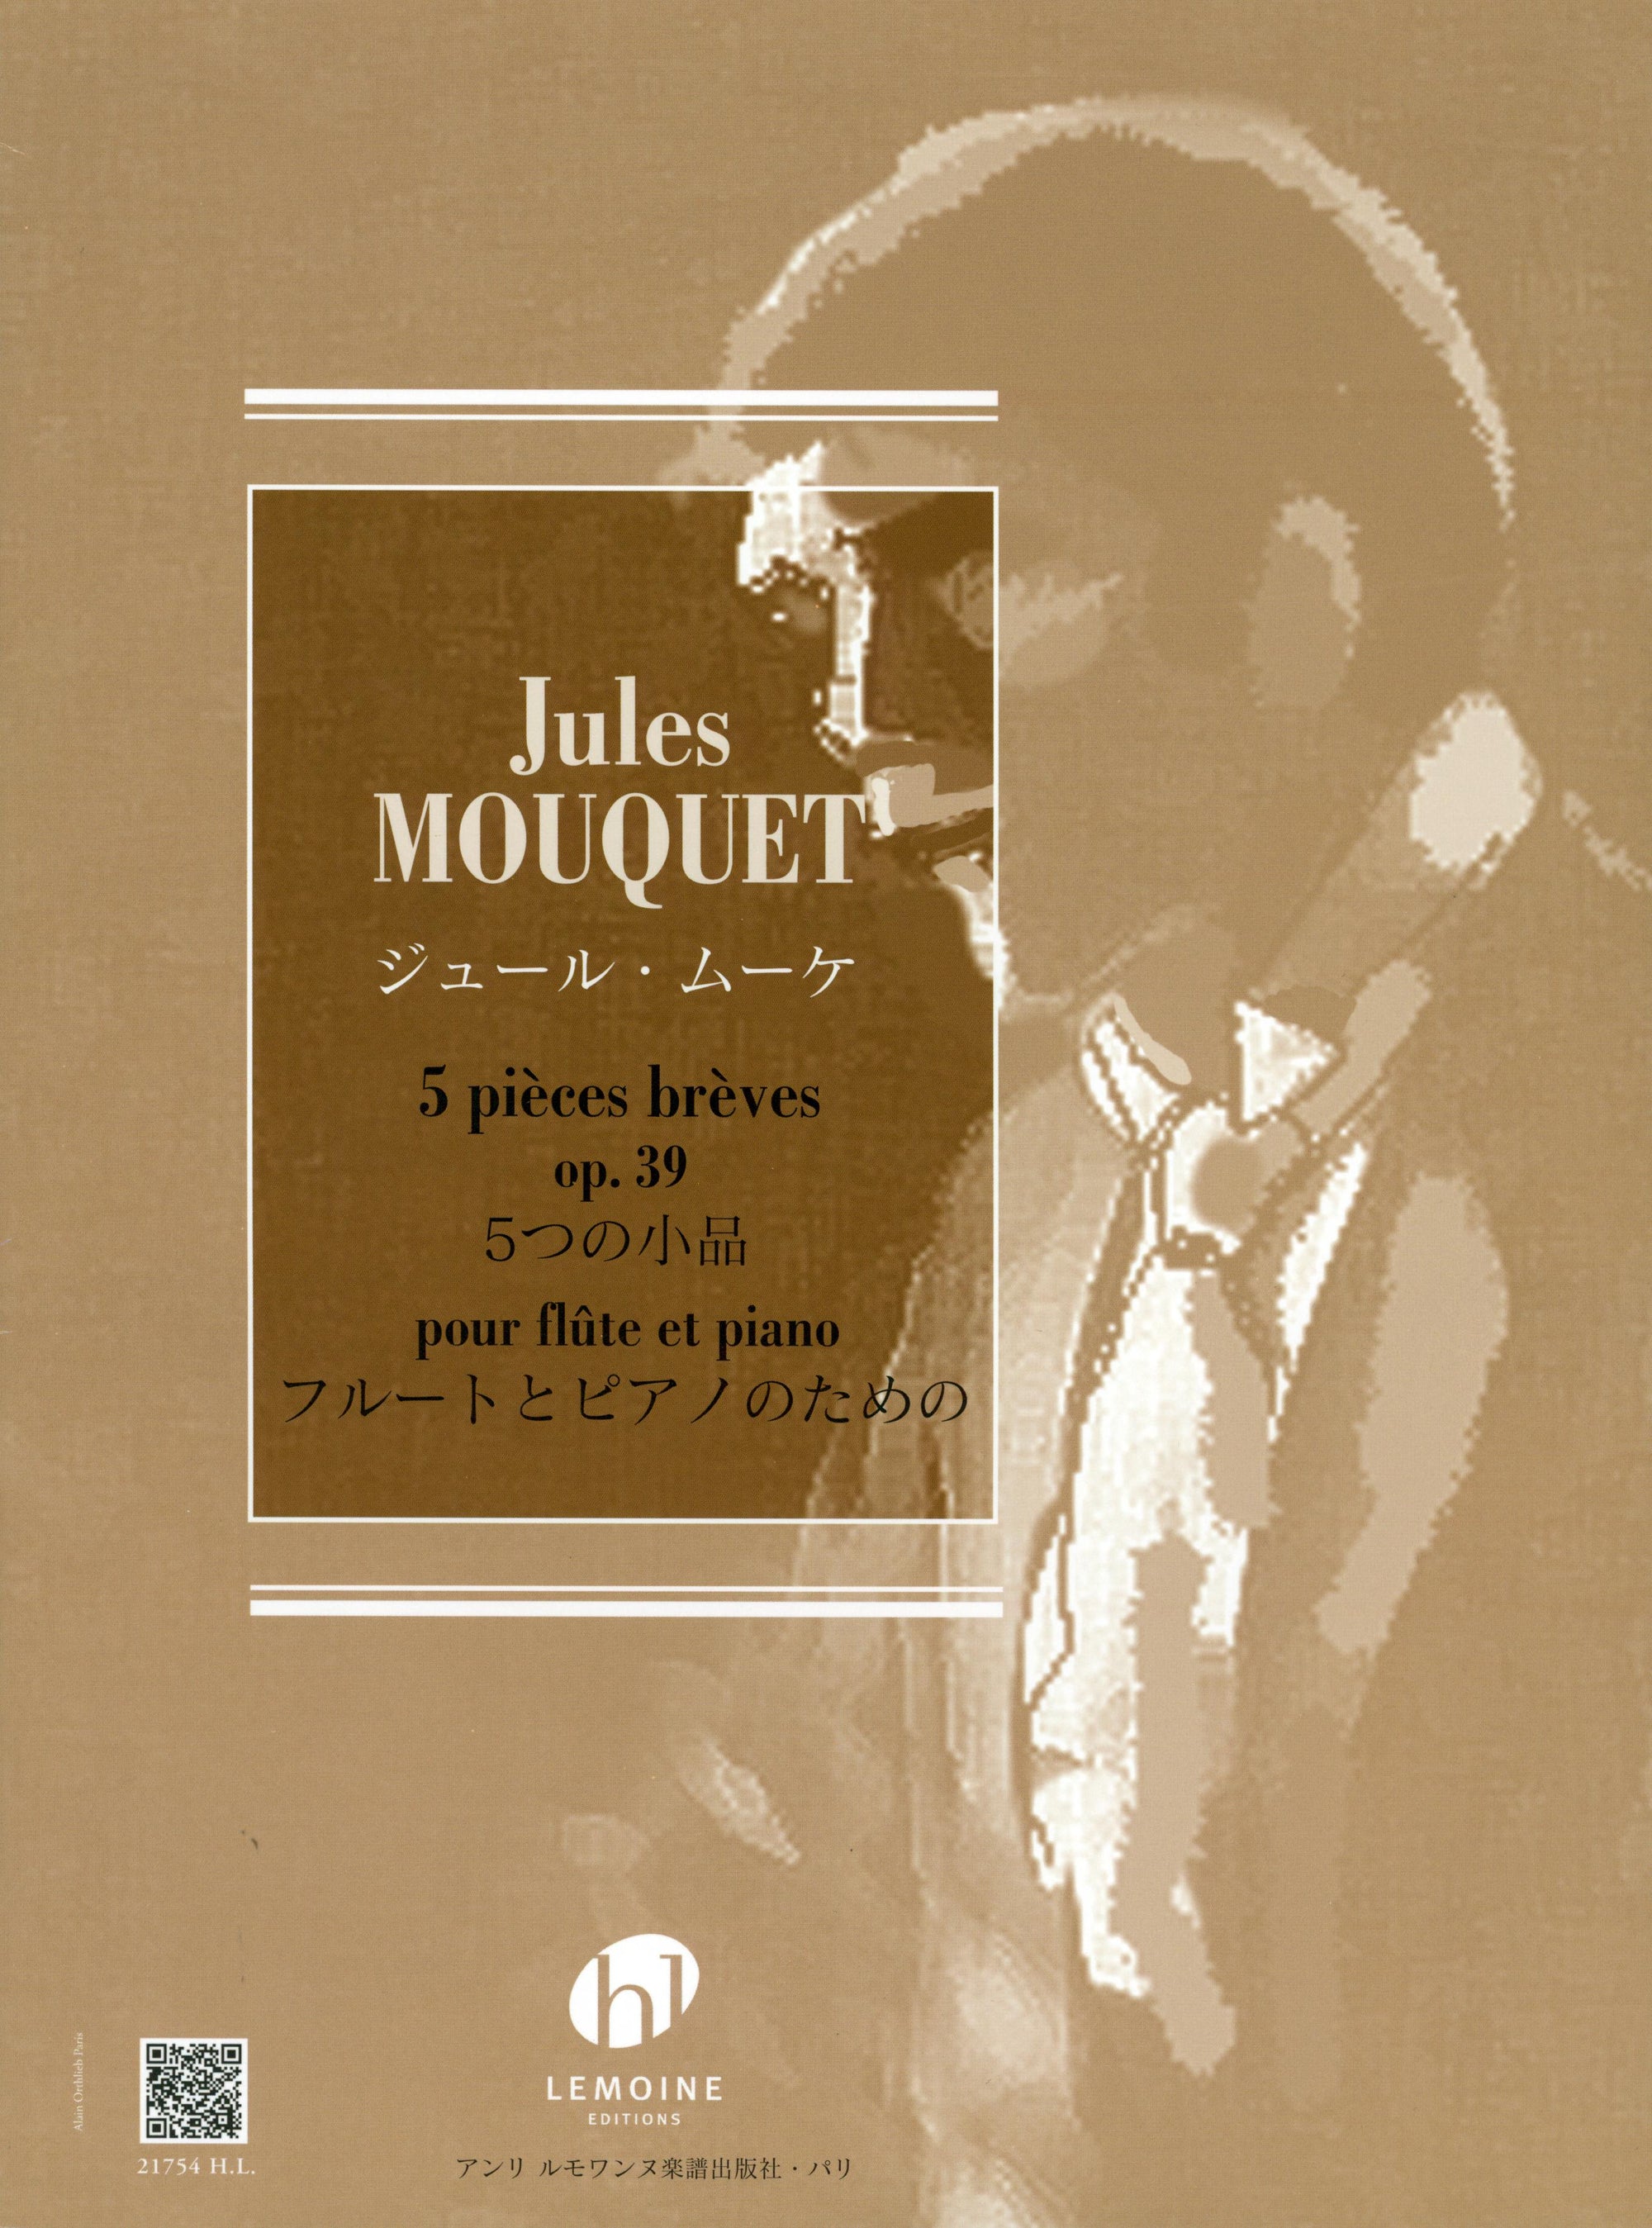 Mouquet: 5 pièces brèves, Op. 39